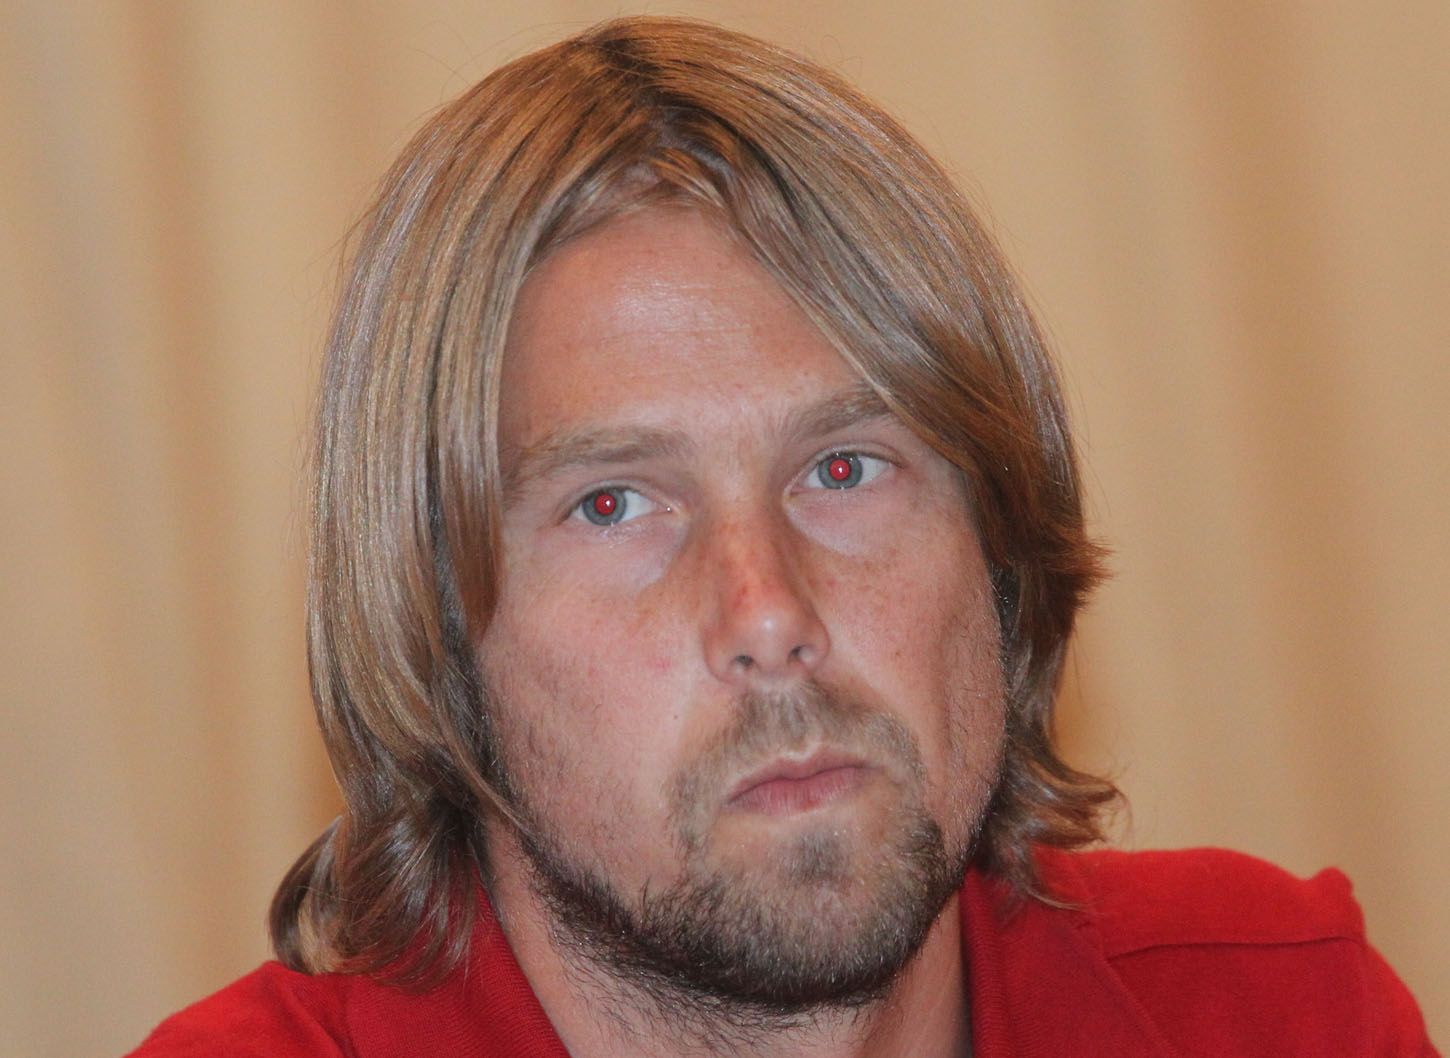 Český fotbalový reprezentant Jaroslav Plašil během tréninku před přípravným utkáním s Finskem v sezóně 2011/12.